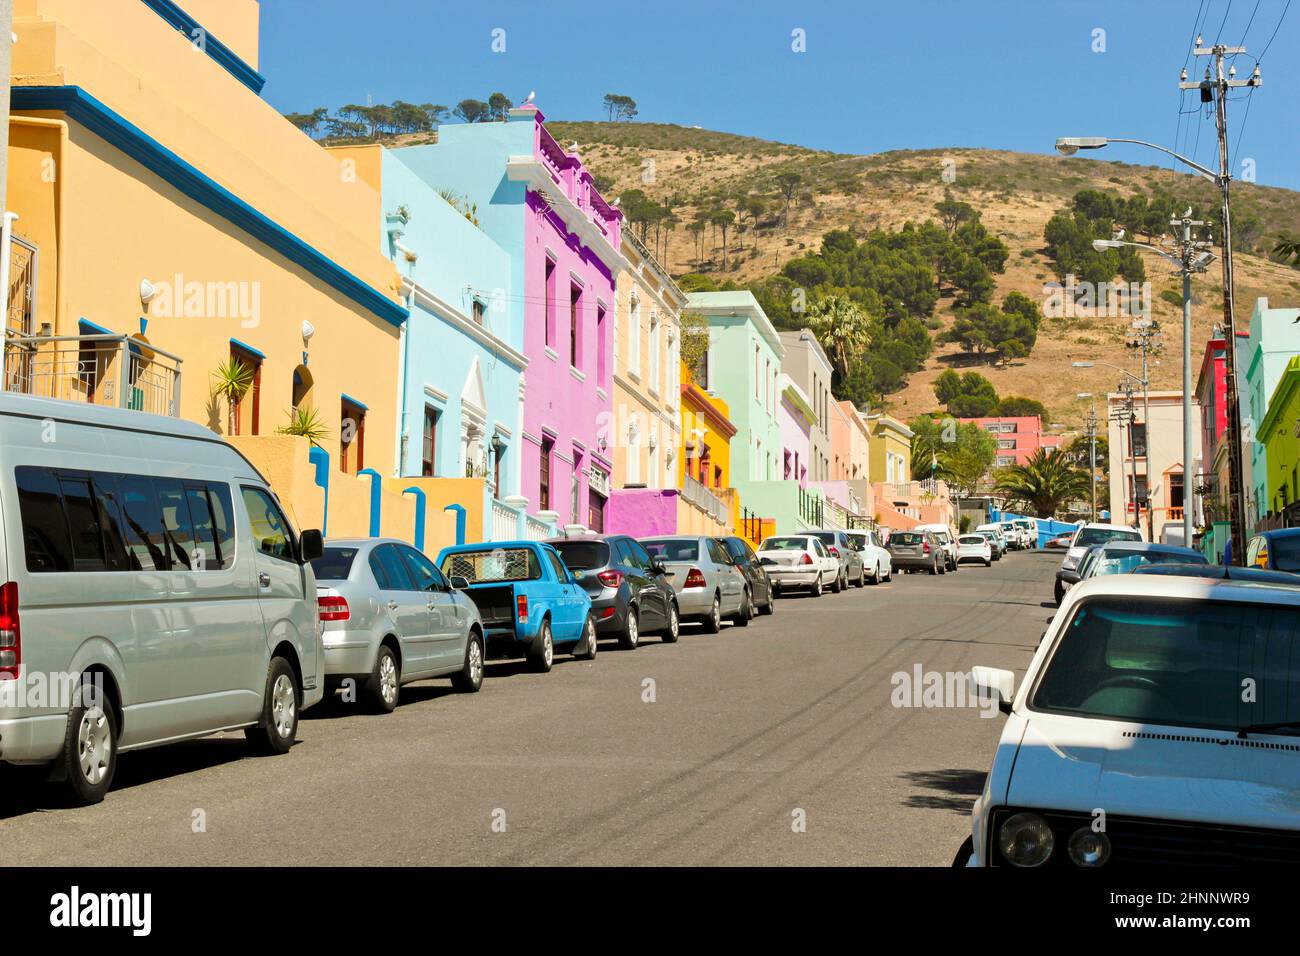 Nombreuses maisons colorées Bo Kaap au Cap, Afrique du Sud. Banque D'Images